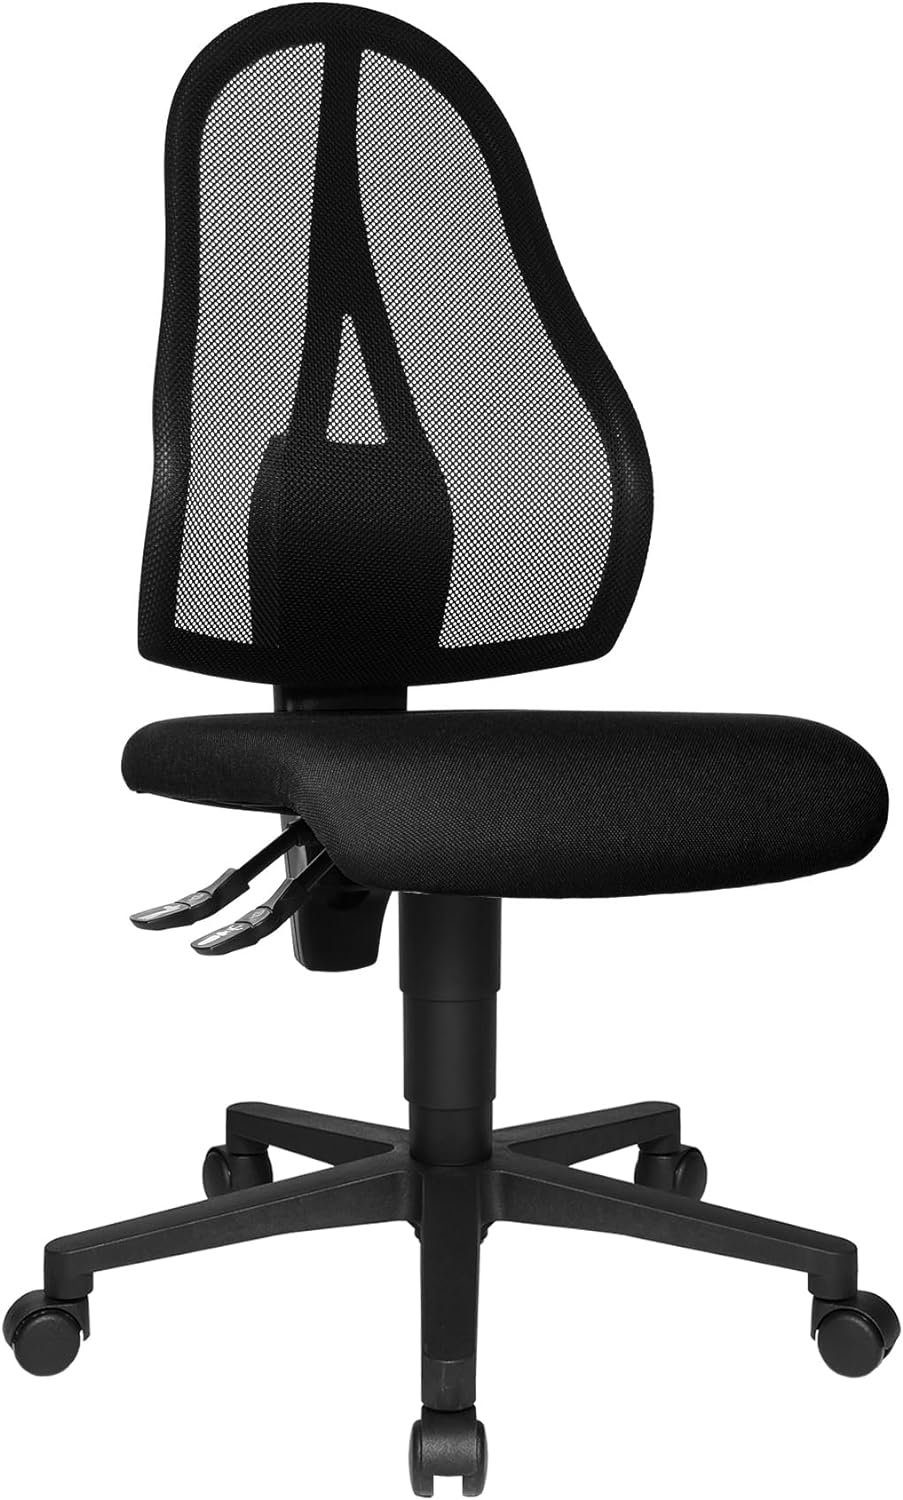 TOPSTAR Bürostuhl (Bürostuhl ergonomisch: Schreibtischstuhl mit verstellbarem Sitz), Open Point P office chair, desk chair, fabric